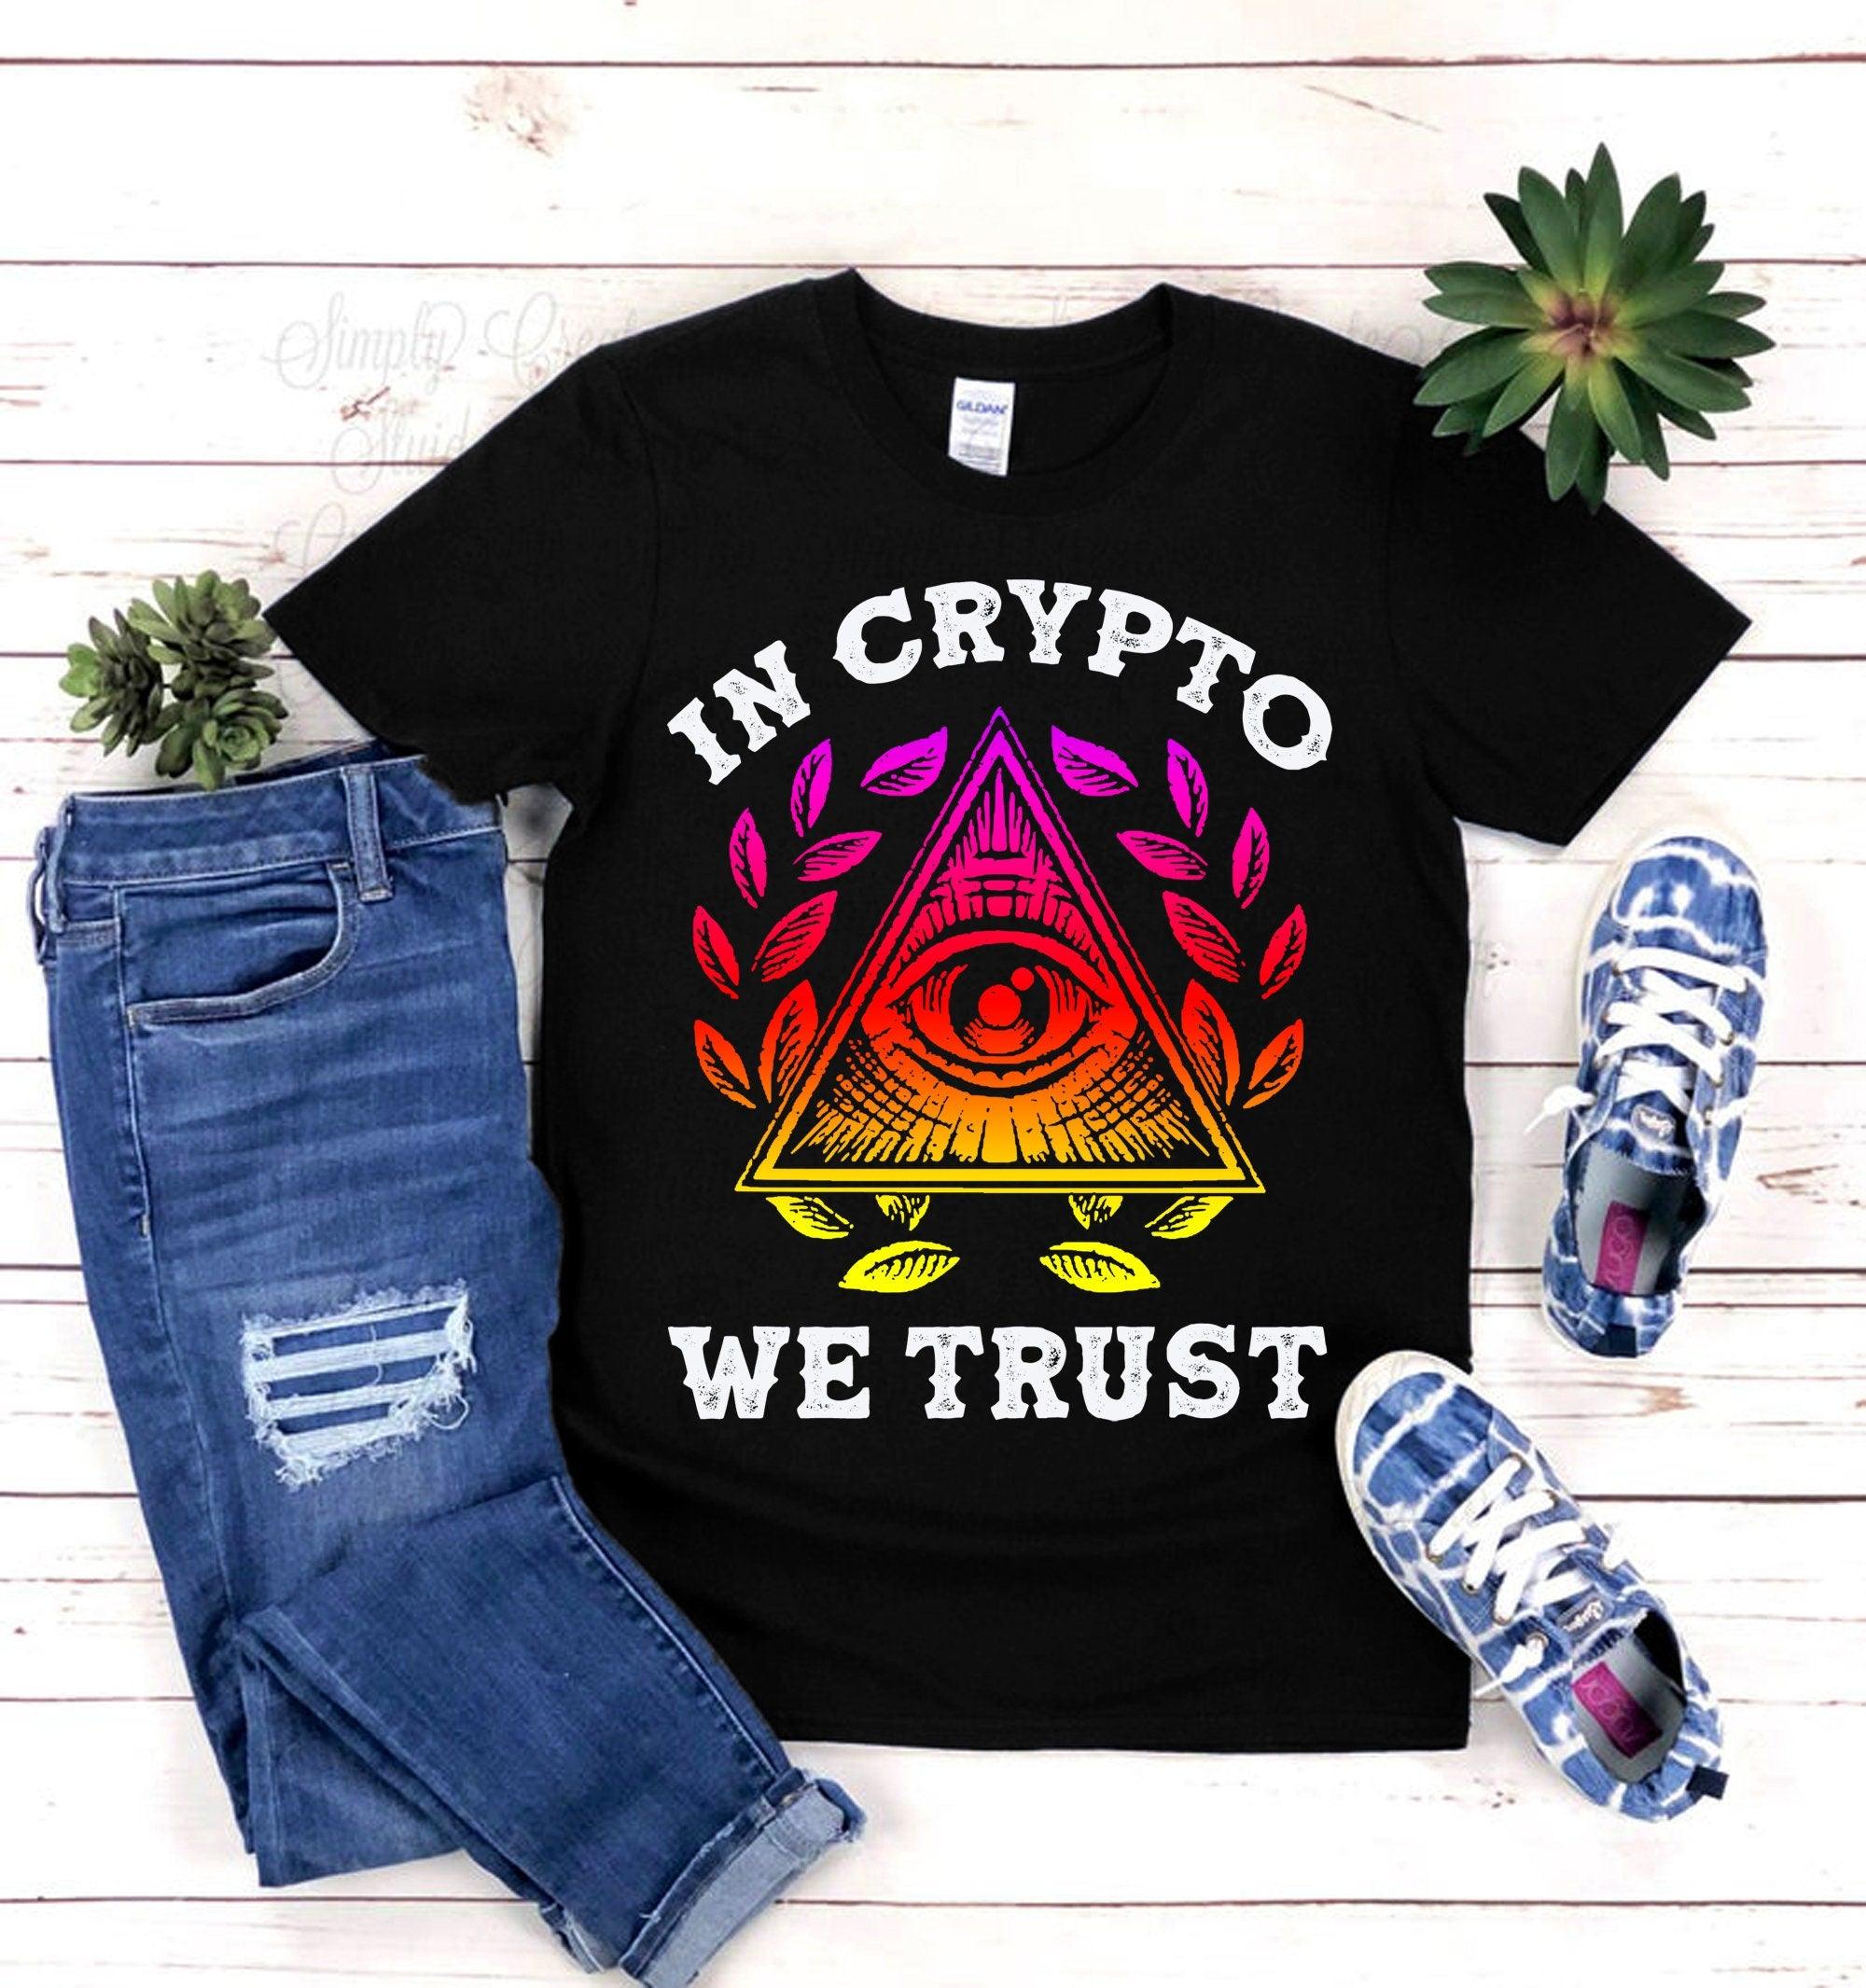 En Crypto confiamos en camisetas, camisa de criptomoneda, regalo de Bitcoin, camisa de criptografía, regalo para él, regalo para hombres, camisa para hombre - plusminusco.com